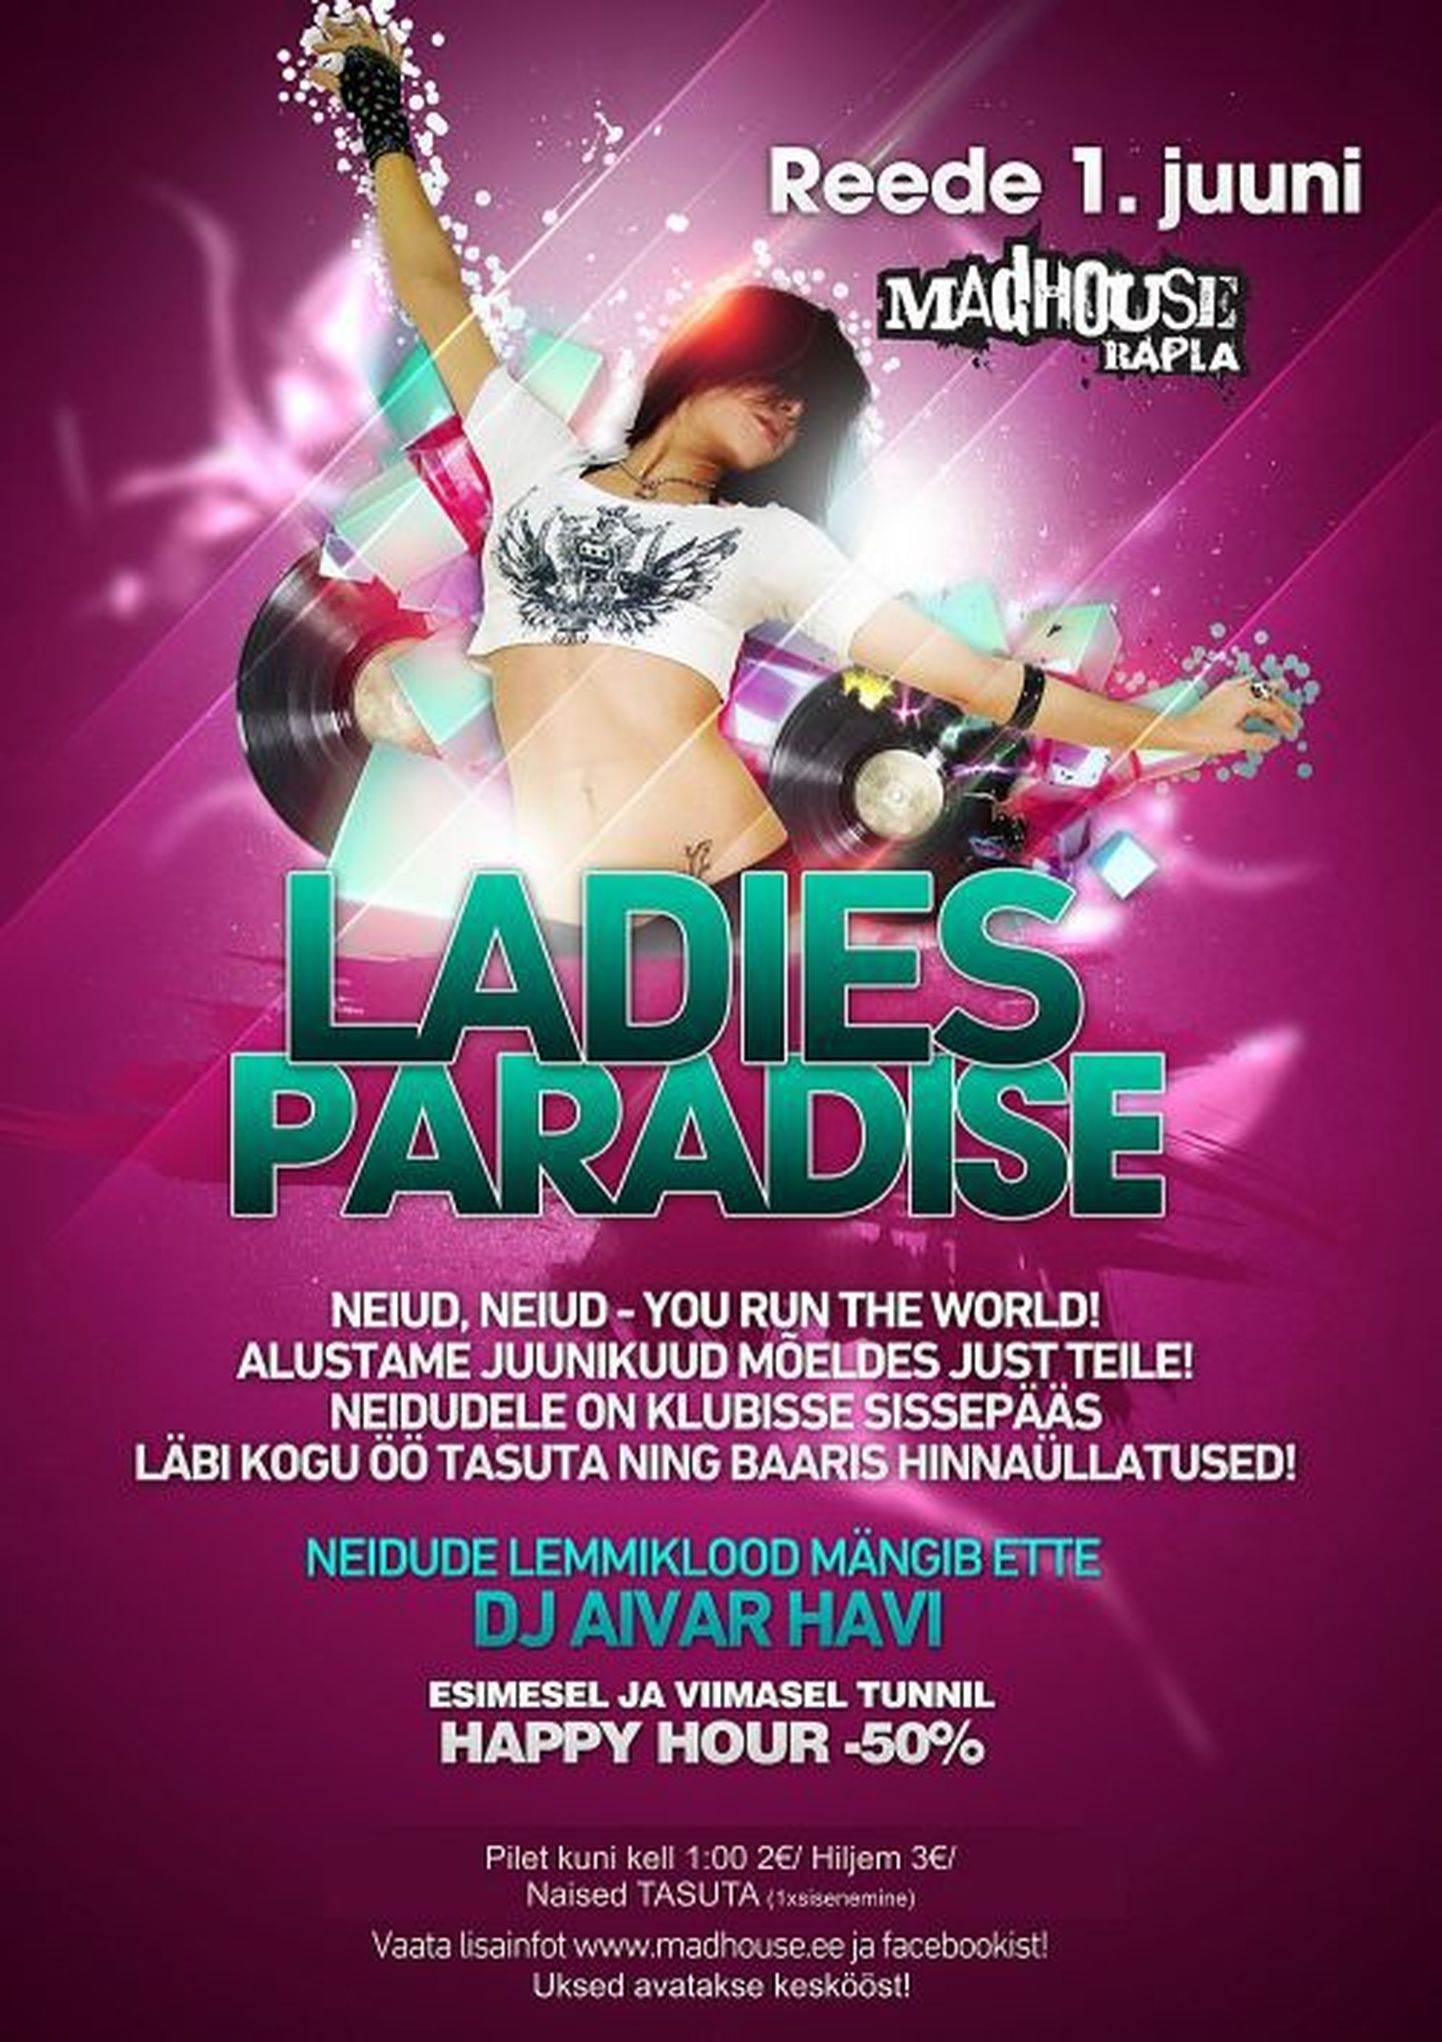 Ladies Paradise sel reedel ööklubis Madhouse!